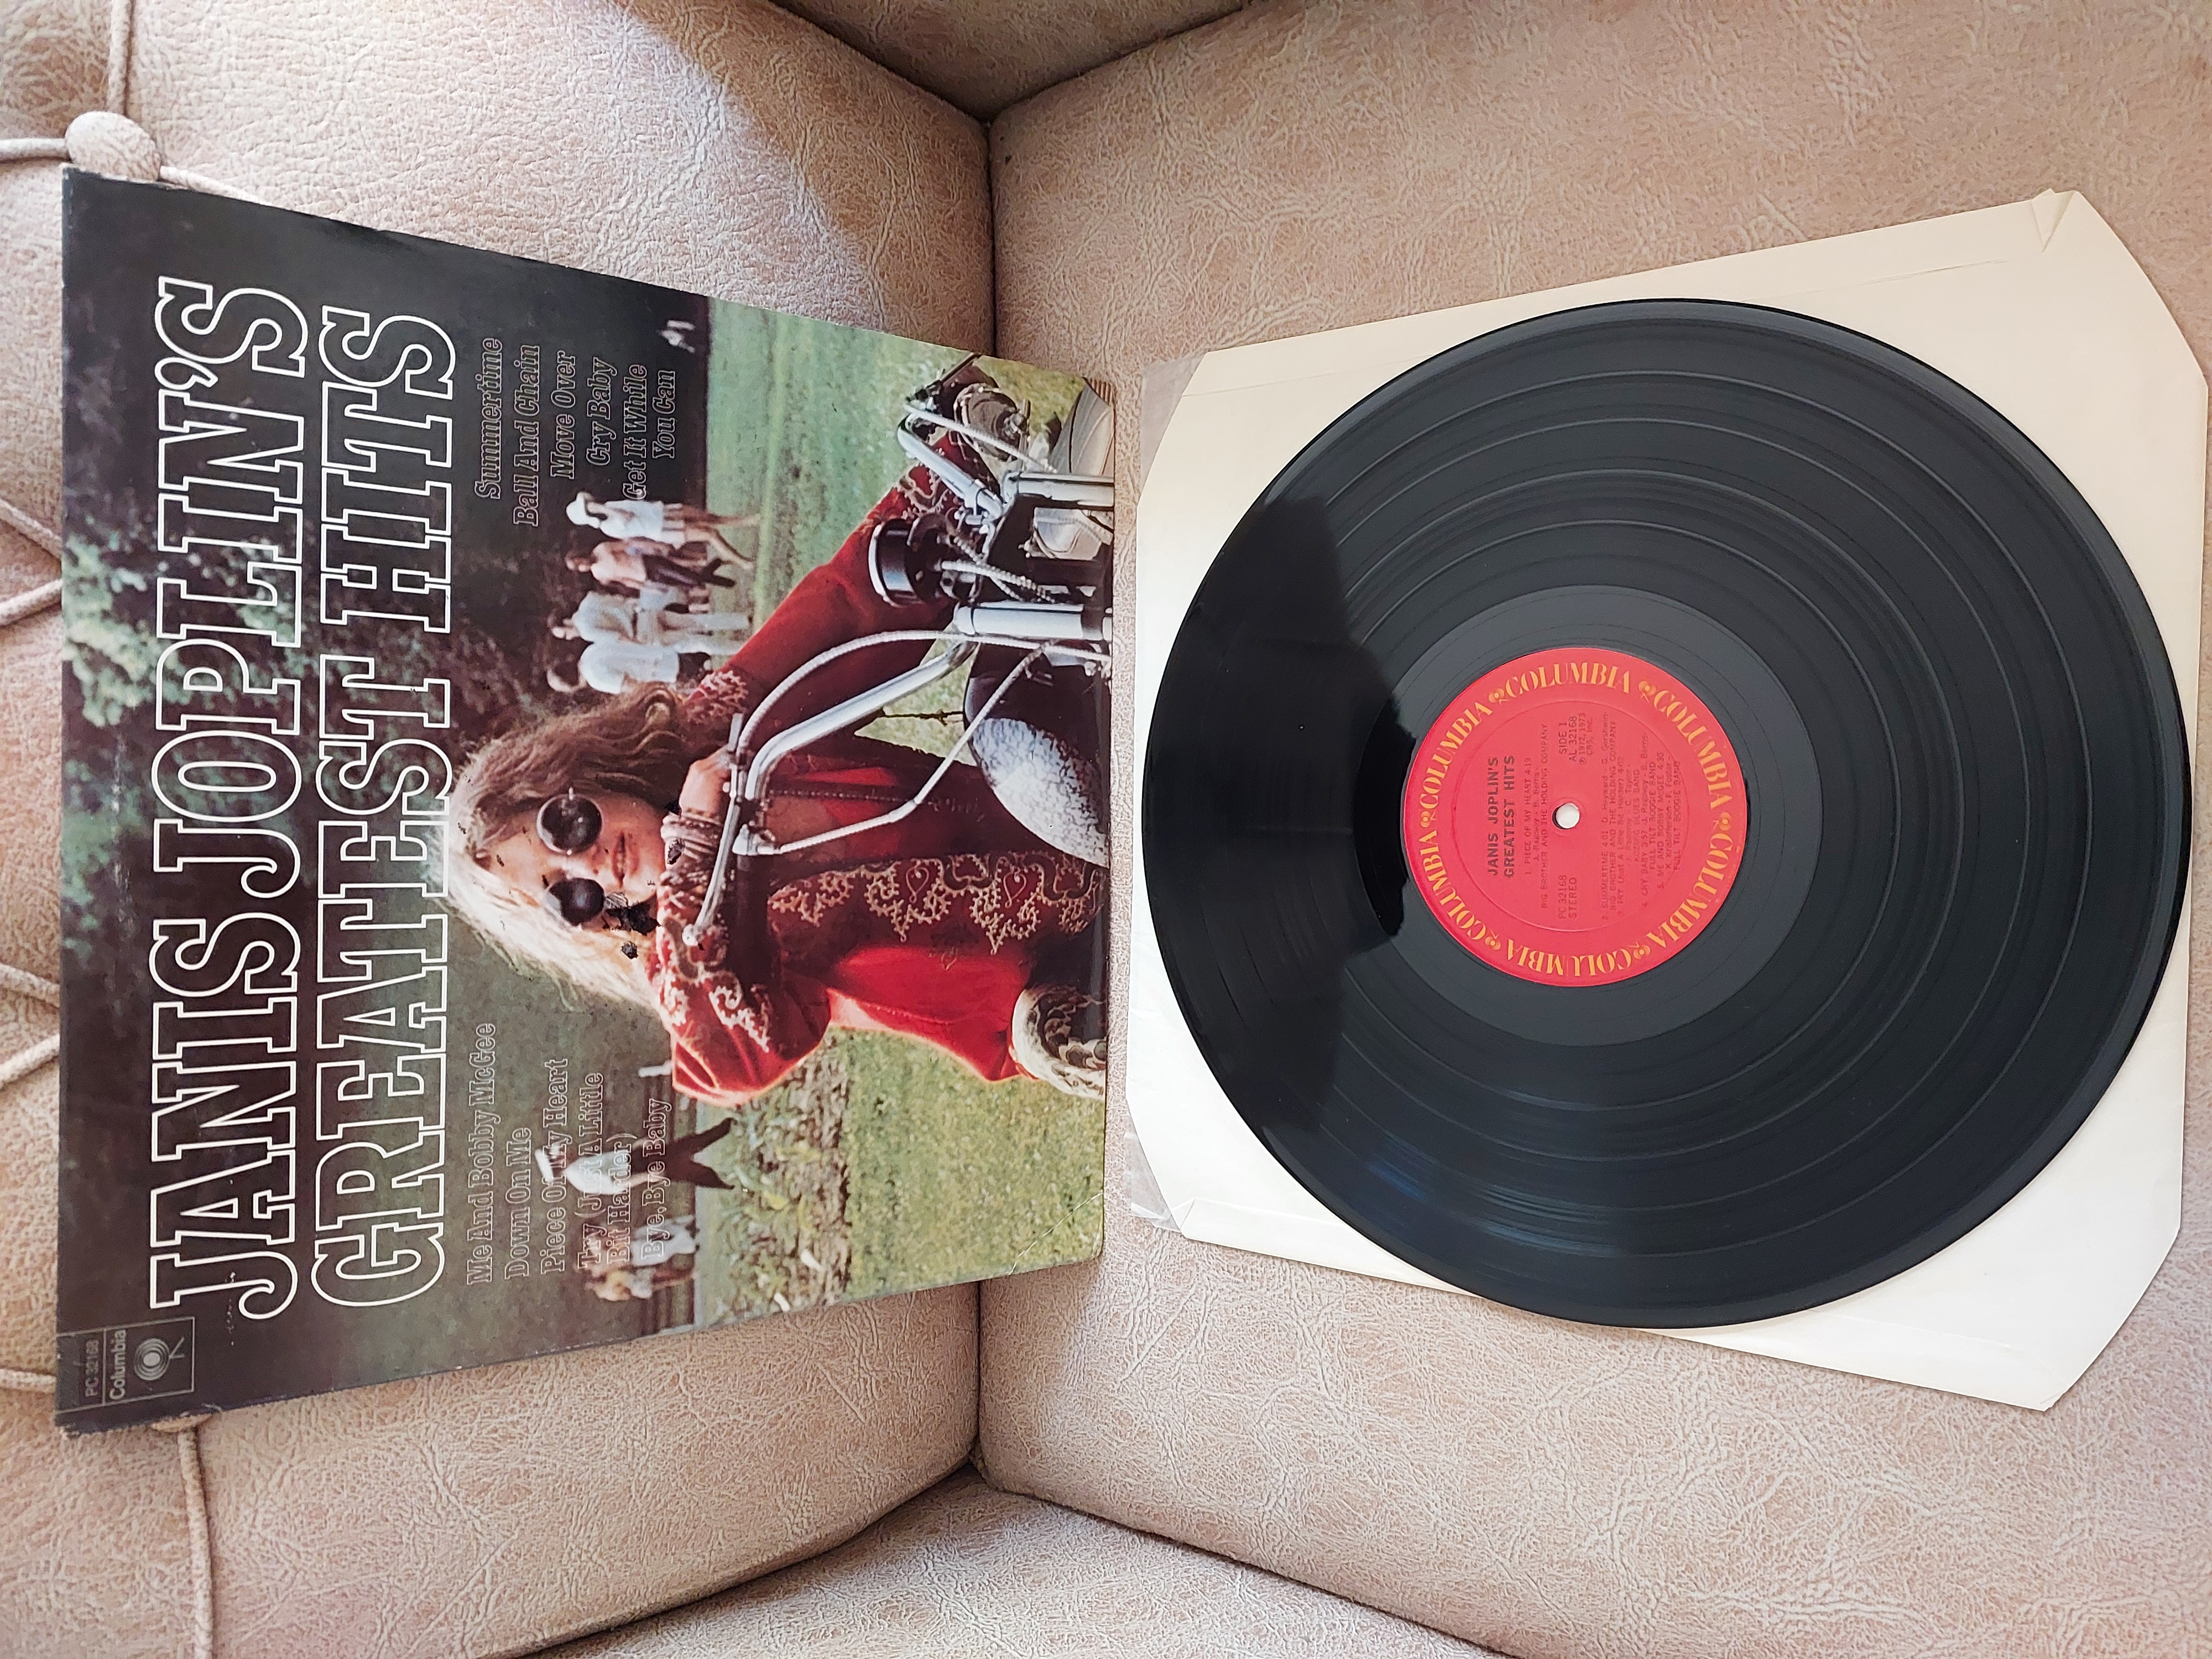 Janis Joplin – Janis Joplin’s Greatest Hits - 1973 USA Basım 33 Lük Plak LP Albüm